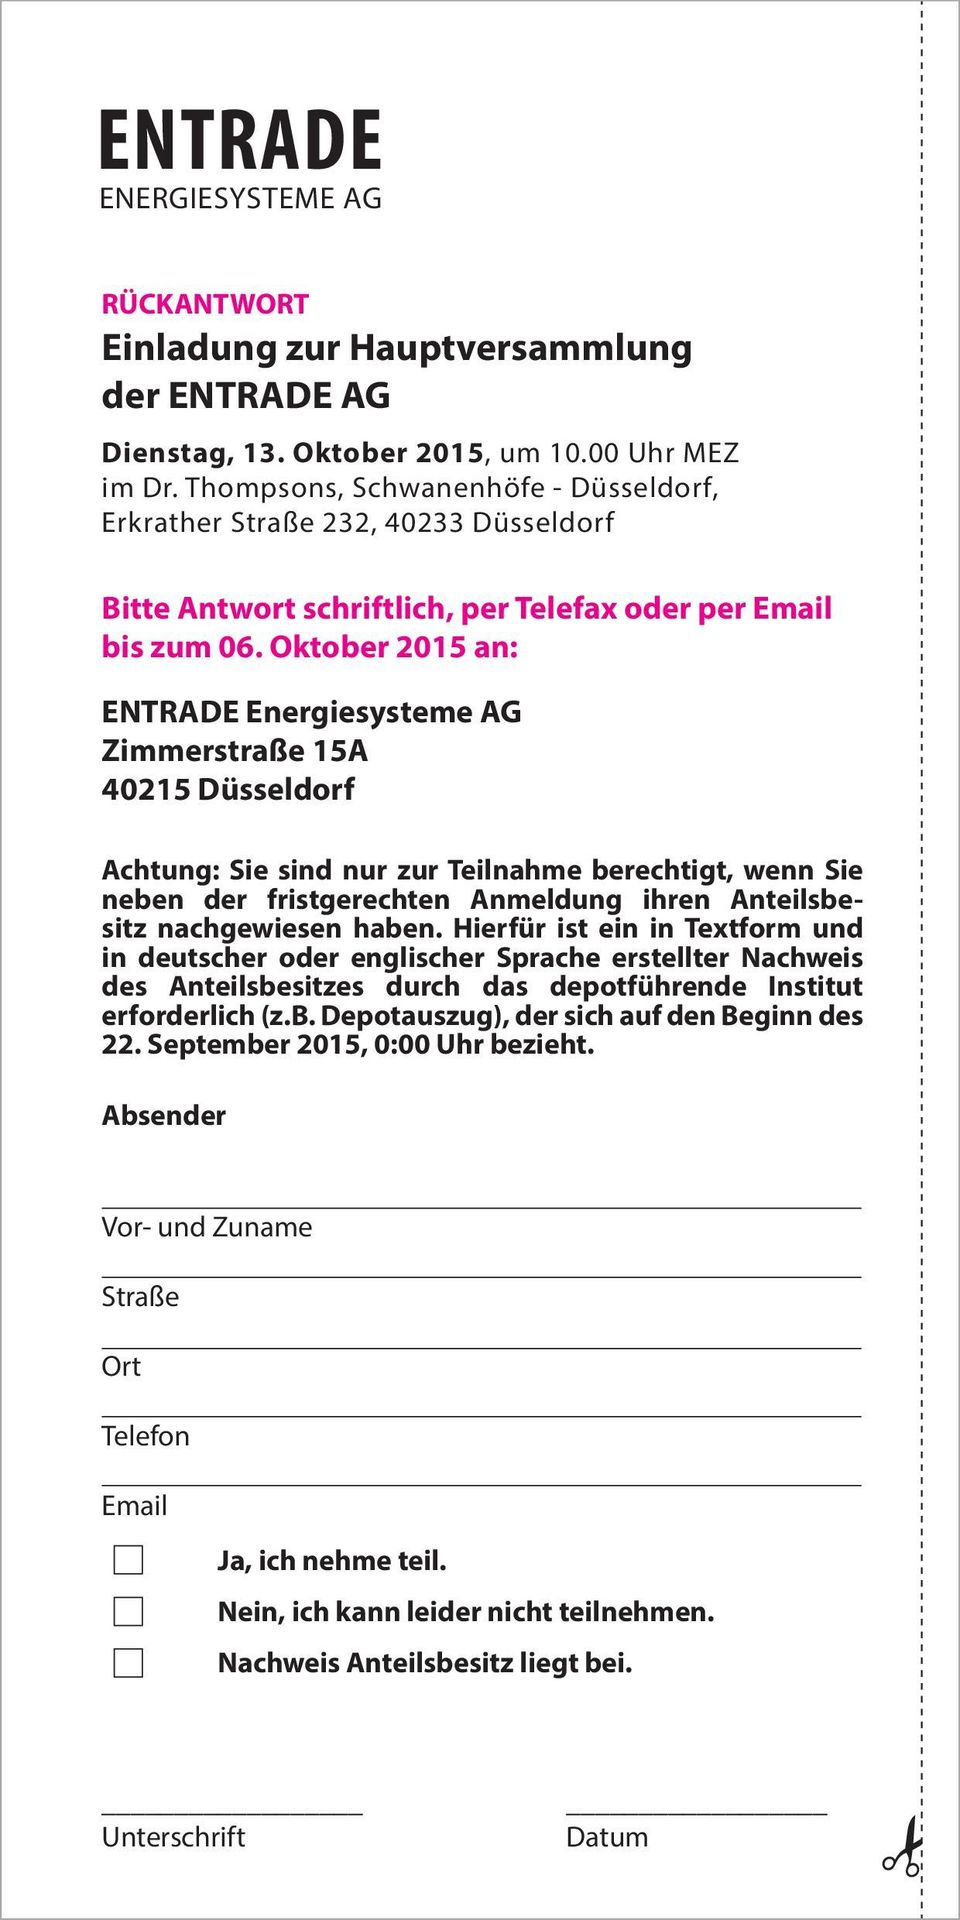 Oktober 2015 an: ENTRADE Energiesysteme AG Zimmerstraße 15A 40215 Düsseldorf Achtung: Sie sind nur zur Teilnahme berechtigt, wenn Sie neben der fristgerechten Anmeldung ihren Anteilsbesitz